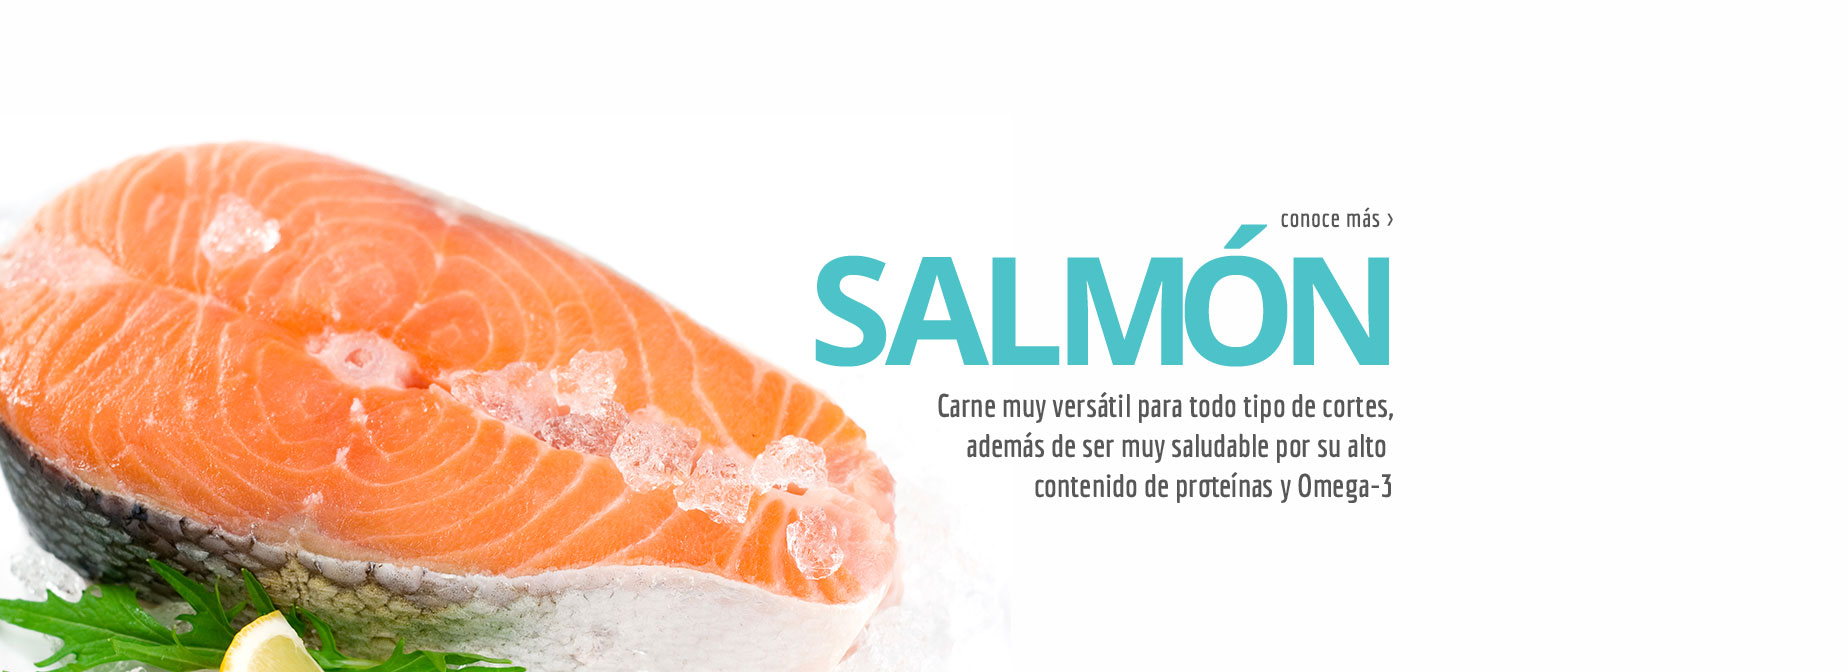 SALMON - Carne muy versátil para todo tipo de cortes, además de ser muy saludable por su alto contenido de proteínas y Omega-3